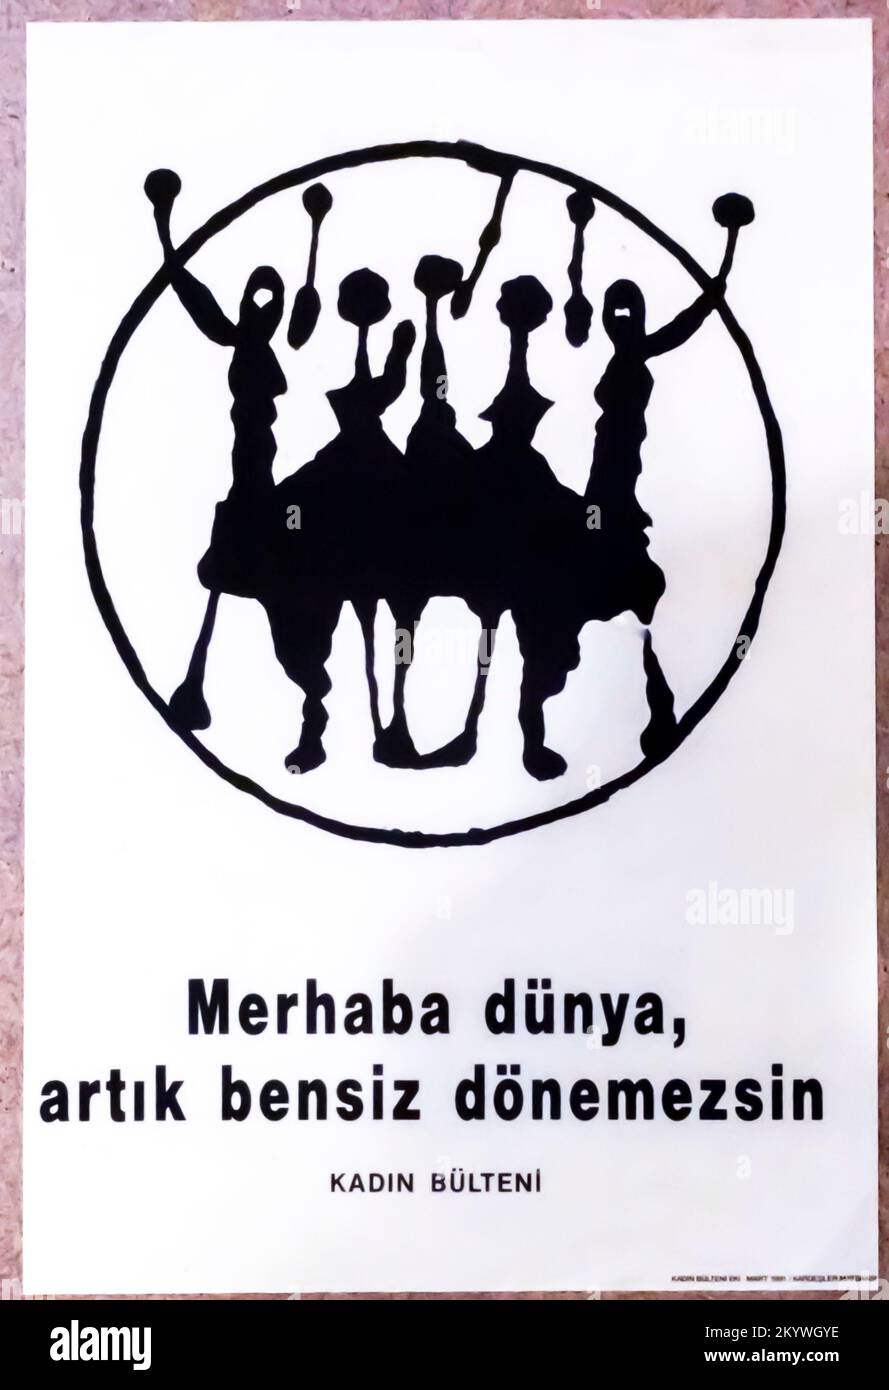 "Hallo Welt, du kannst nicht ohne uns weitermachen" feministisches Poster von Kadin Buleteni, das öffentliche Leben der Frauen. Feministisches Gedächtnisprojekt. Stockfoto